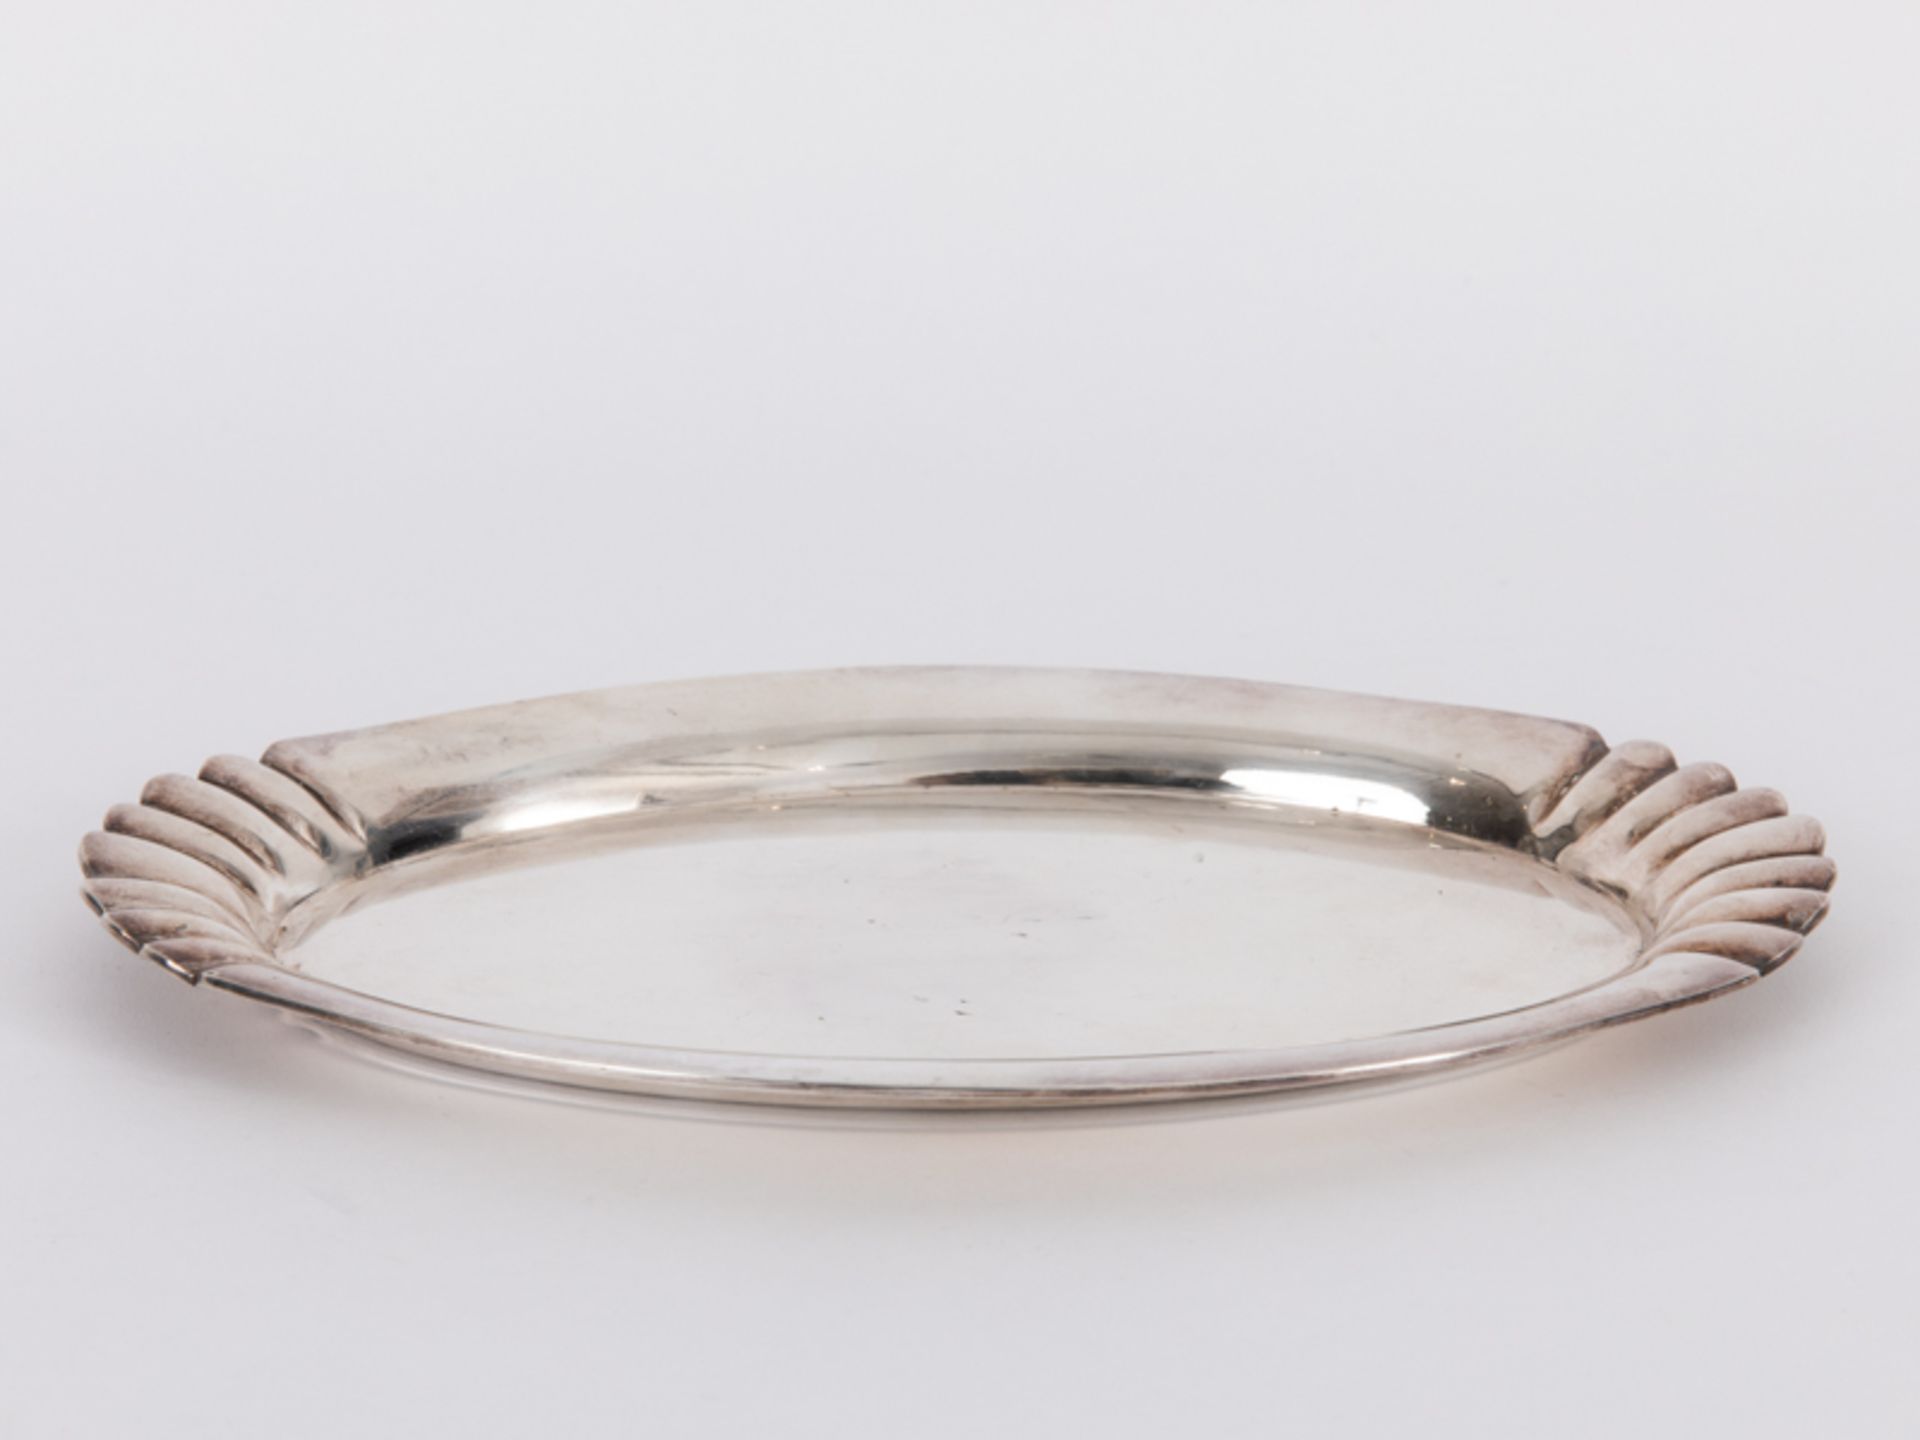 Kleines Tablett, deutsch, 20. Jh. br800/-Silber, ca. 250 g; Ovalform mit gerundet ansteigender - Bild 2 aus 4